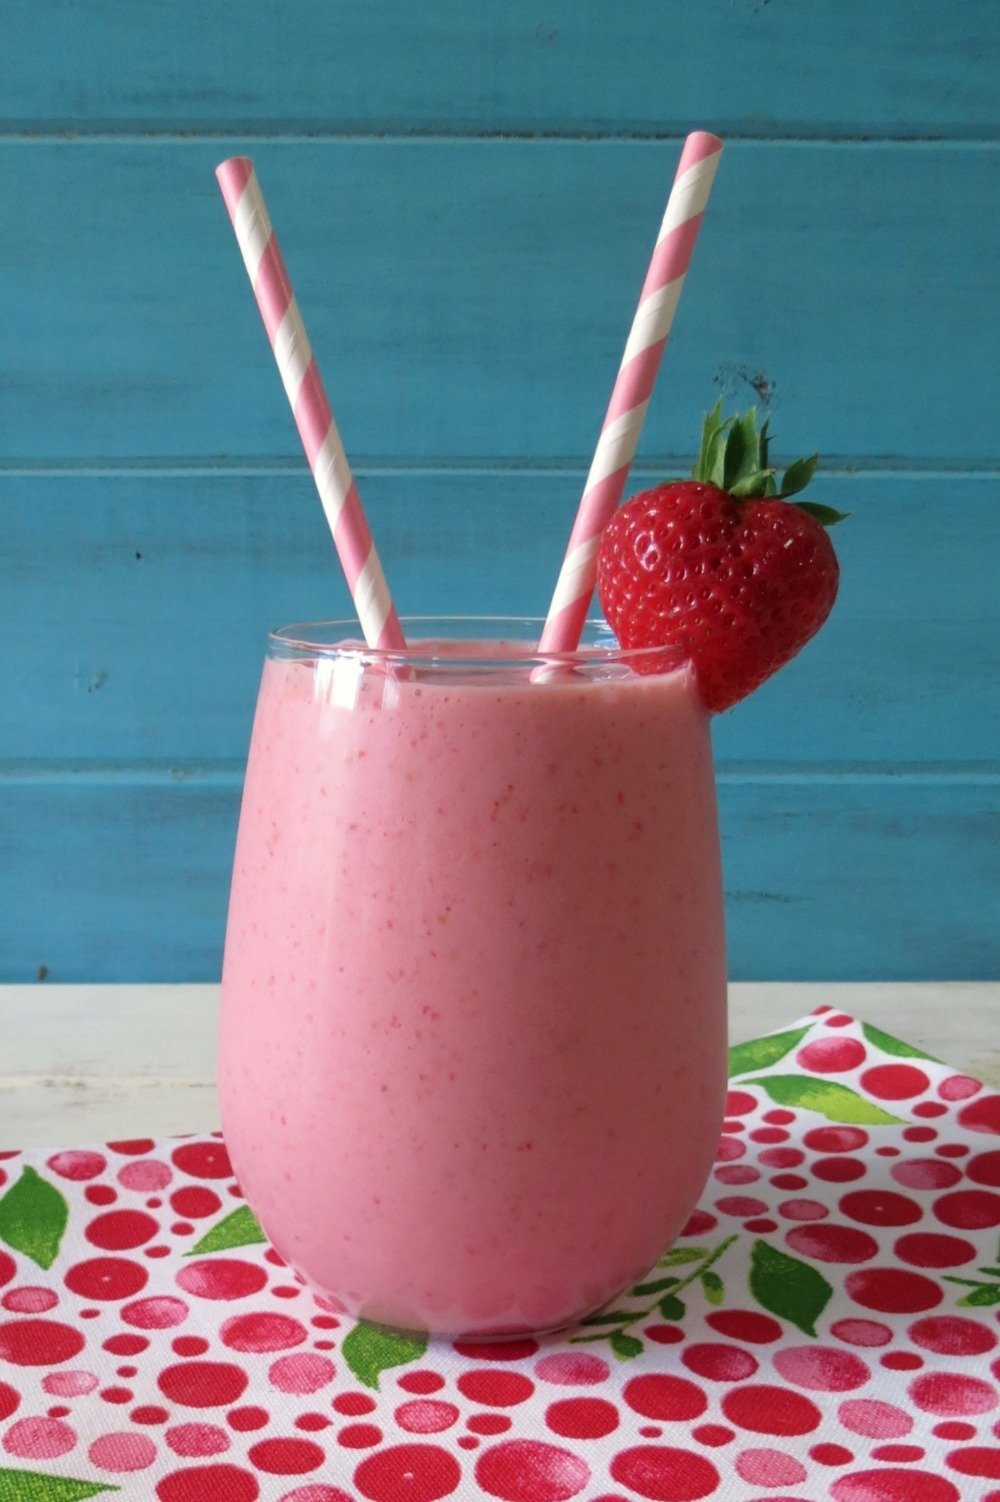 strawberry banana orange juice yogurt smoothie